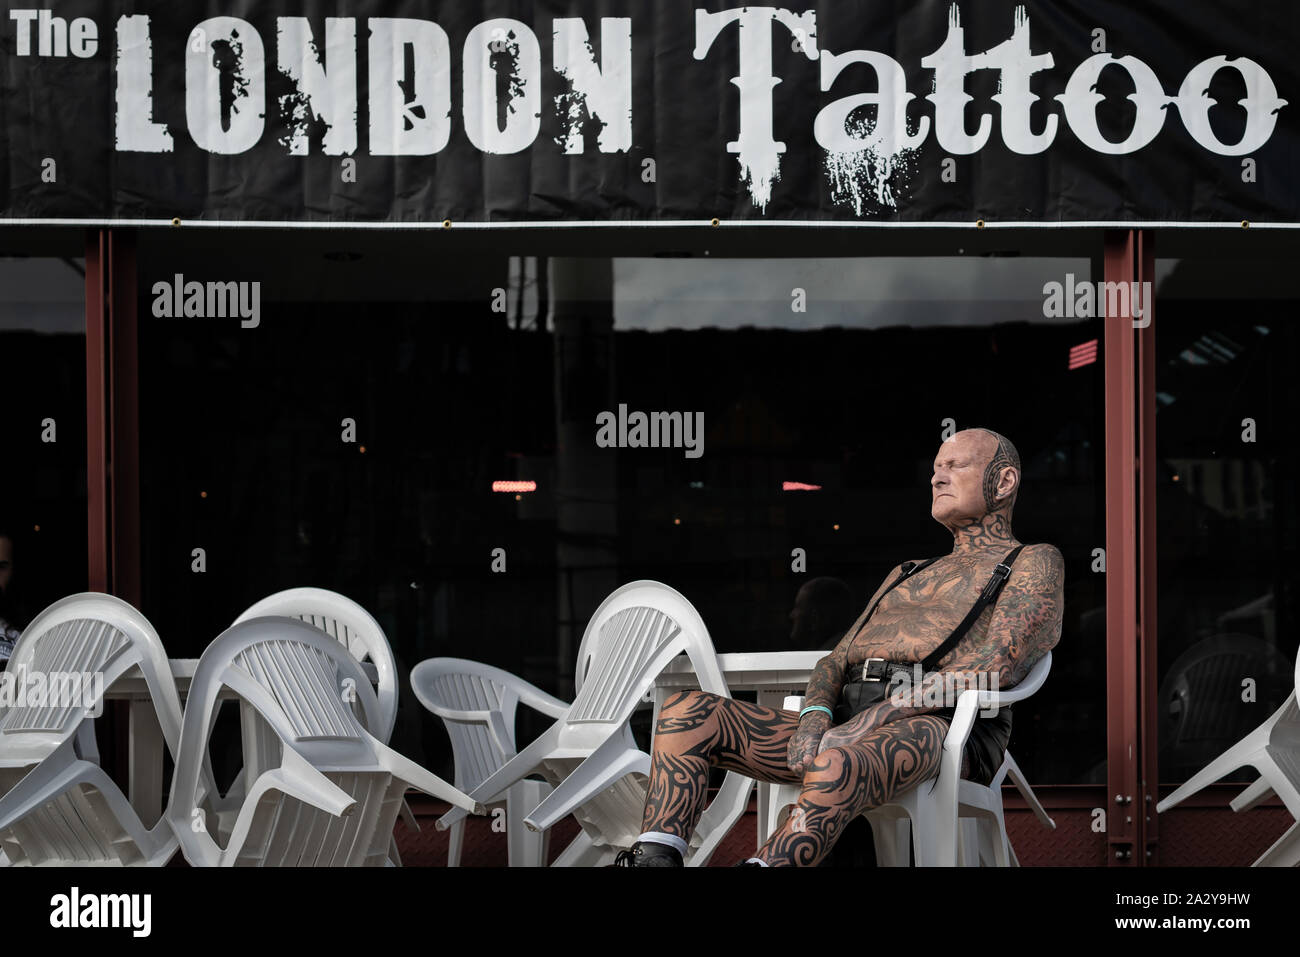 15e Convention de Tatouage à Londres International Tobacco Dock. L'un des plus prestigieux body art conventions dans le monde entier. Londres, Royaume-Uni. Banque D'Images